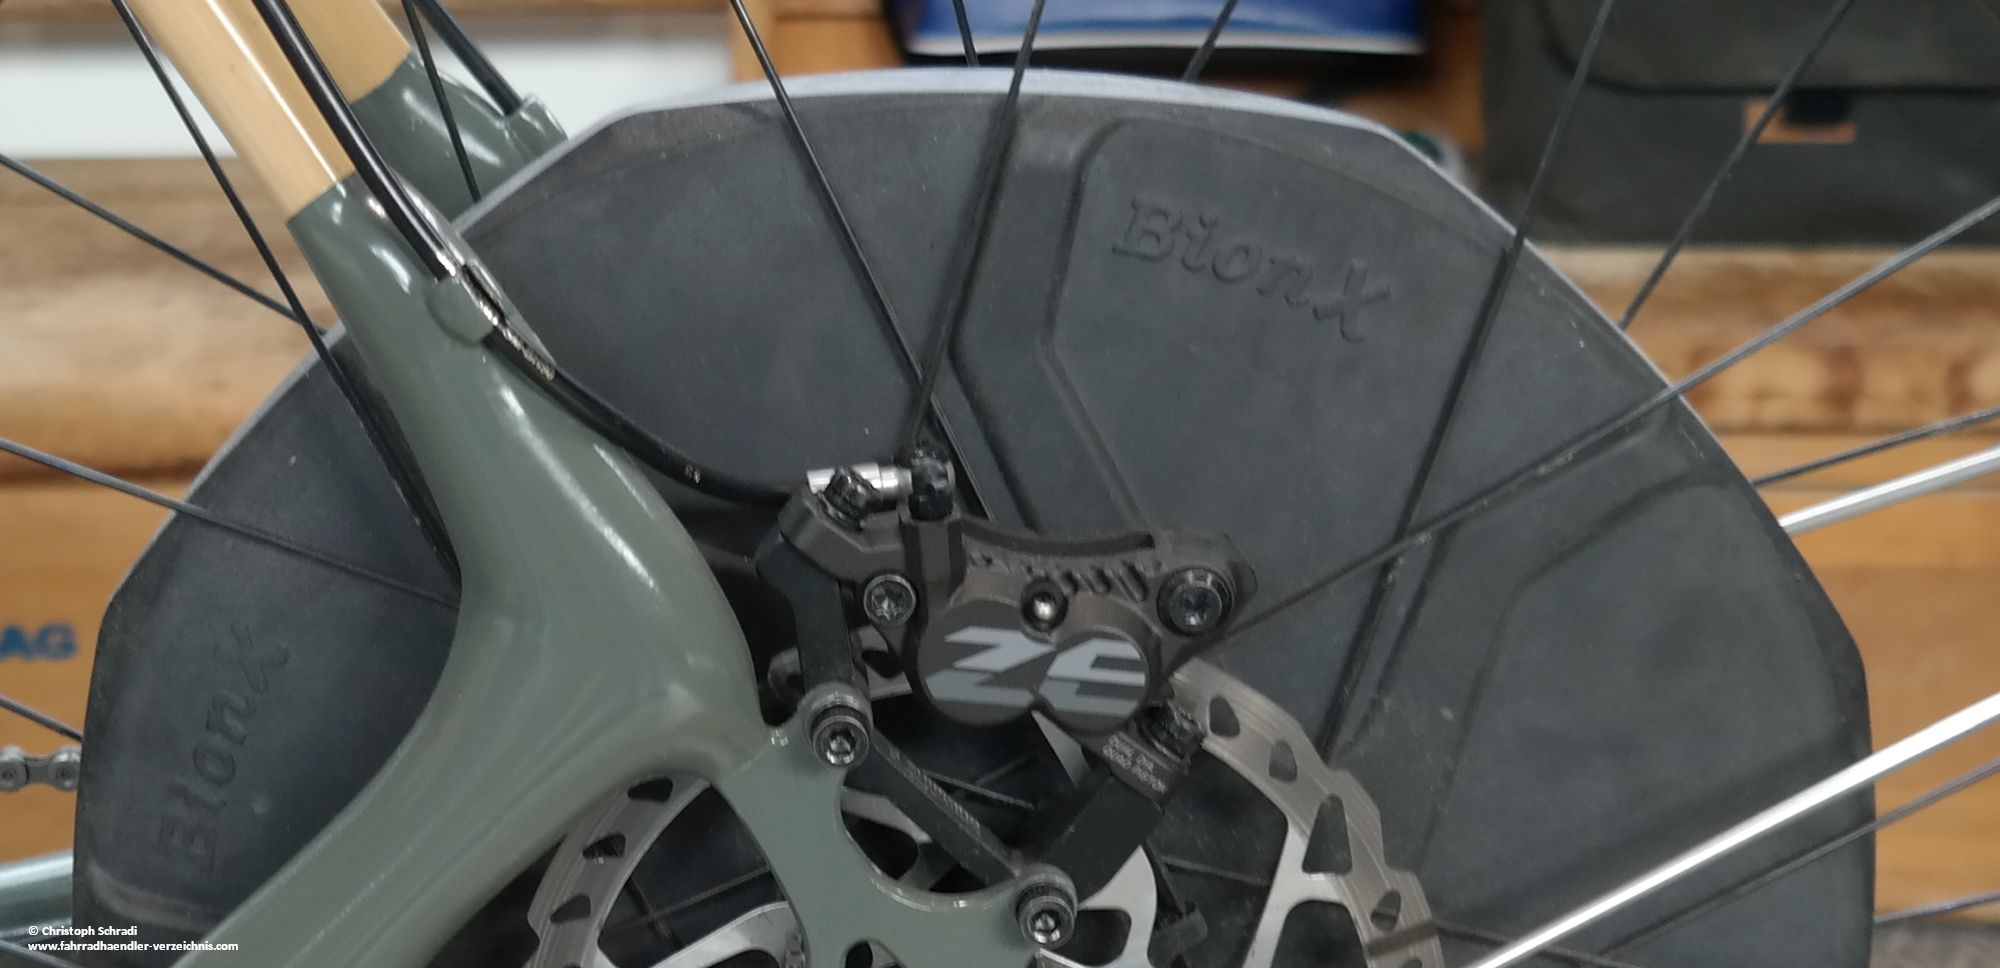 Wie auch bei Bosch kann die Beleuchtung am Bionx Motor mit 6 oder 12 Volt betrieben werden